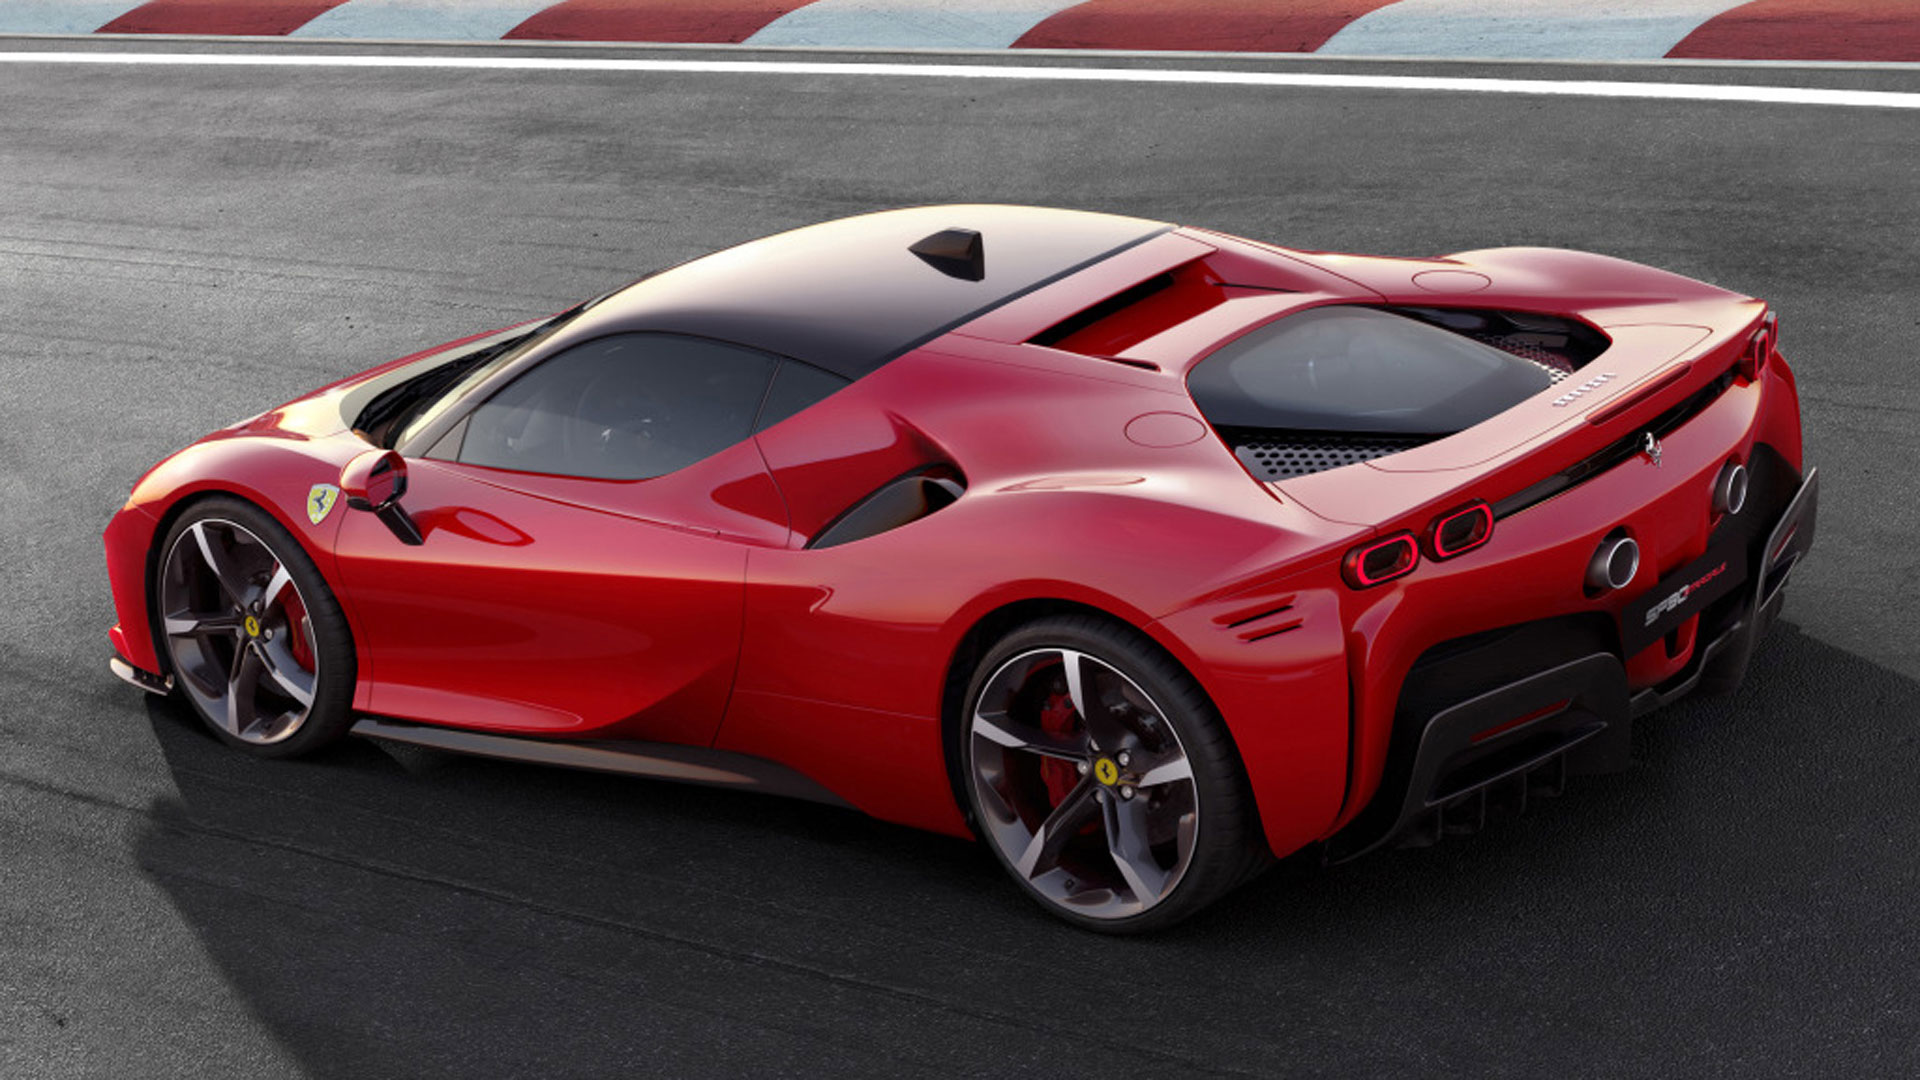 La primera Ferrari híbrida de serie tiene un año más de vida antes de dar paso al 296 y sus sucesores. El SF90 Stradale cuesta más de 520.000 dólares